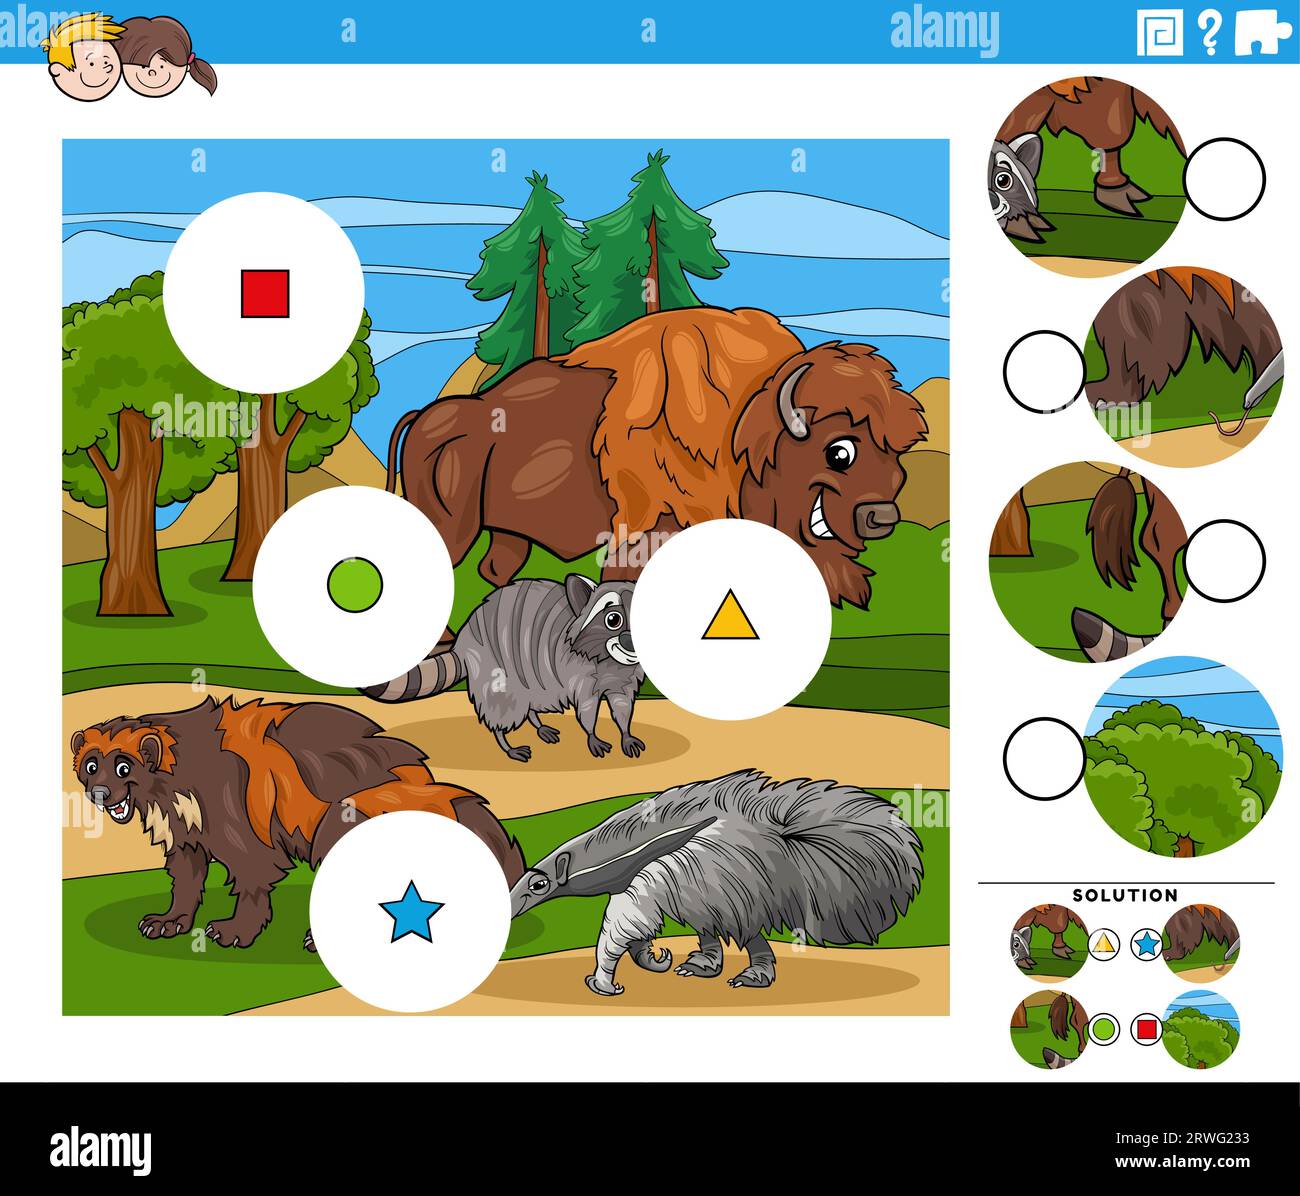 Zeichentrickillustration der pädagogischen Match the Pieces Puzzle-Aktivität mit wilden Tieren Stock Vektor